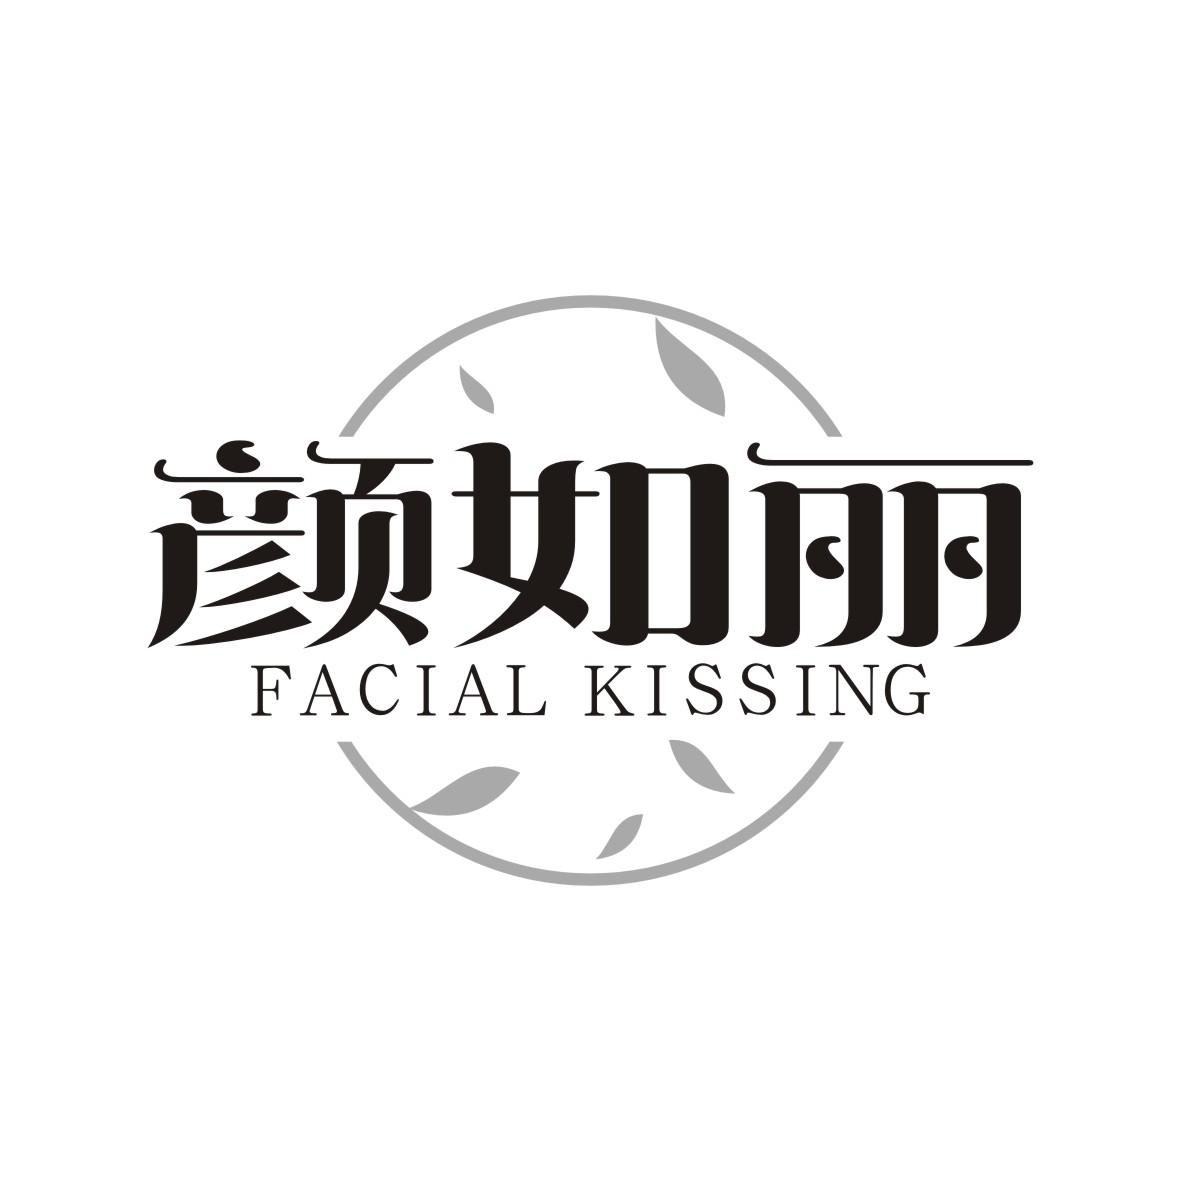 颜如丽 FACIAL KISSING